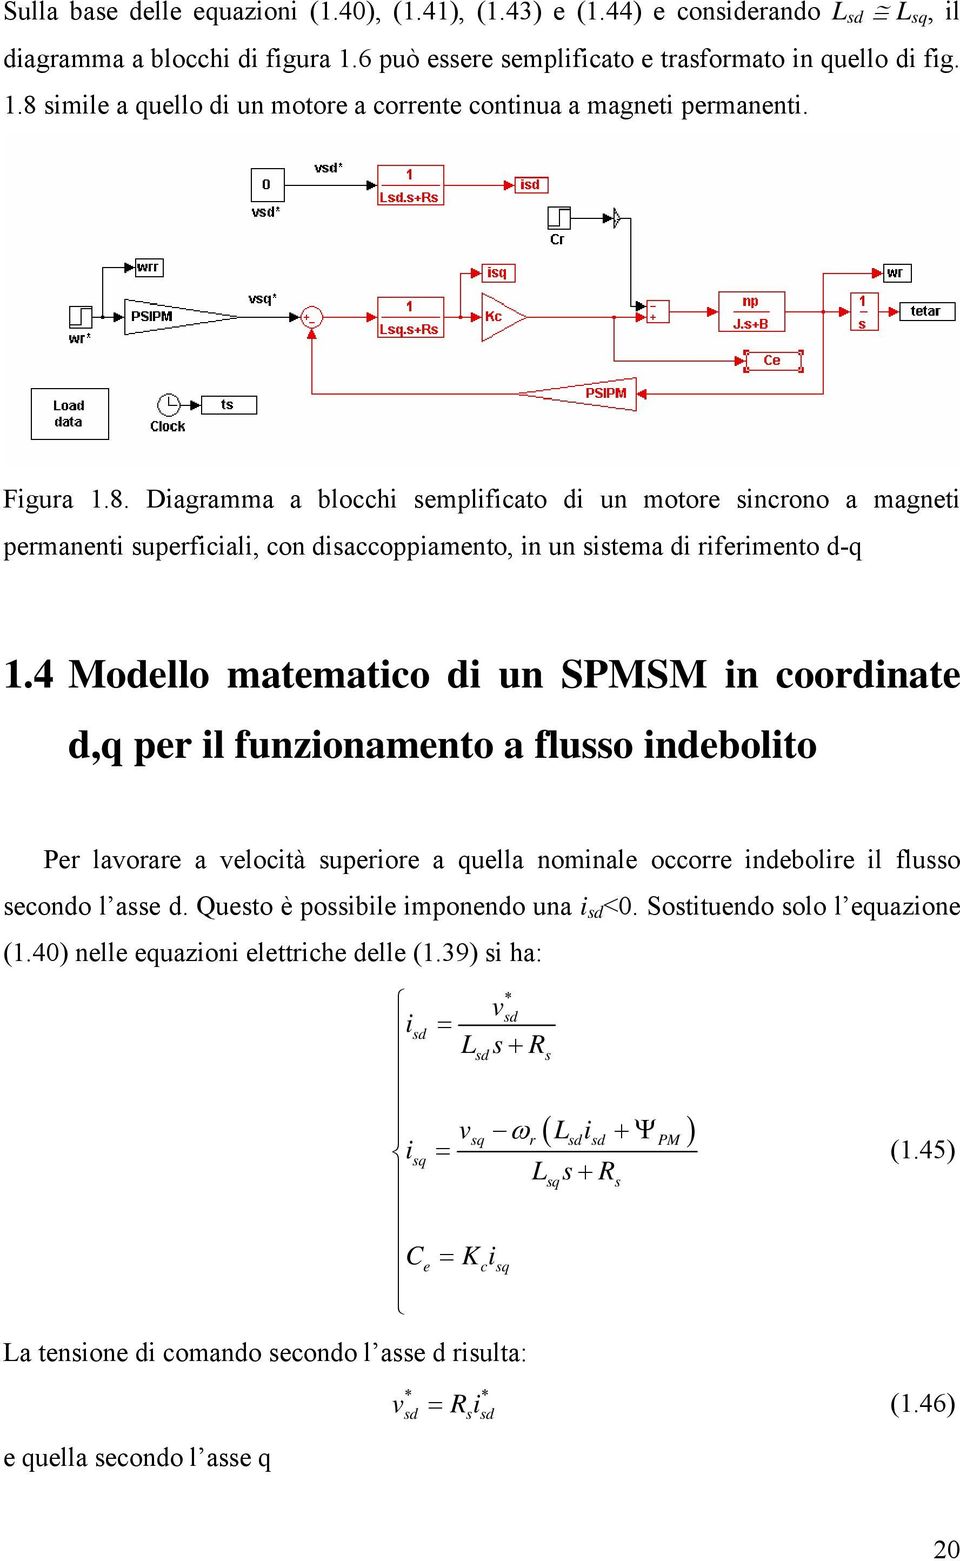 4 Modello matematico di un SPMSM in coodinate d,q pe il funzionamento a fluo indebolito Pe lavoae a velocità upeioe a quella nominale occoe indebolie il fluo econdo l ae d.